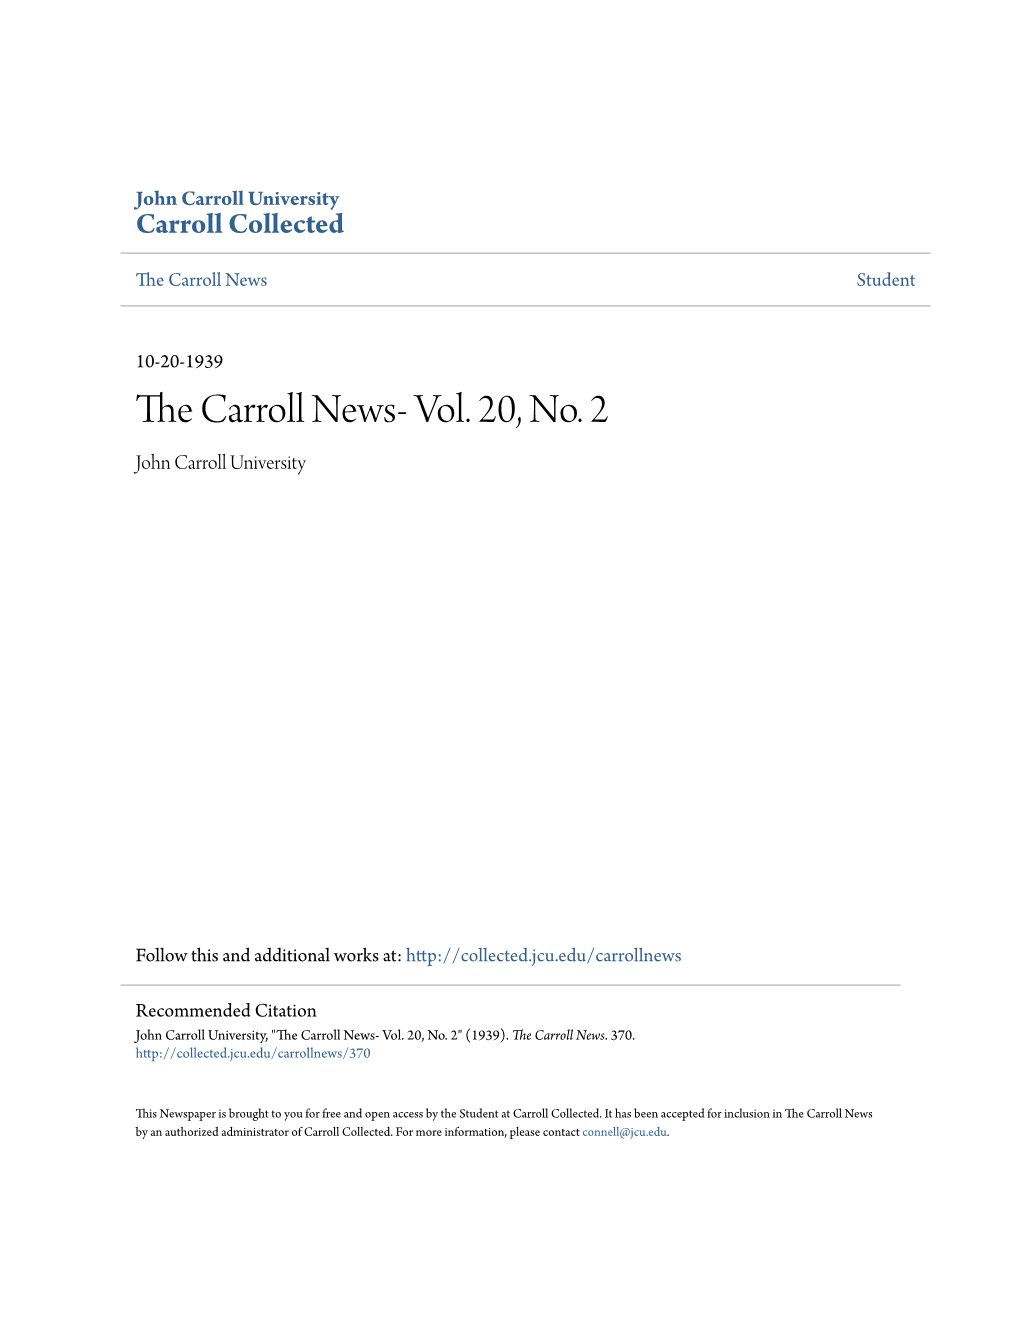 The Carroll News- Vol. 20, No. 2